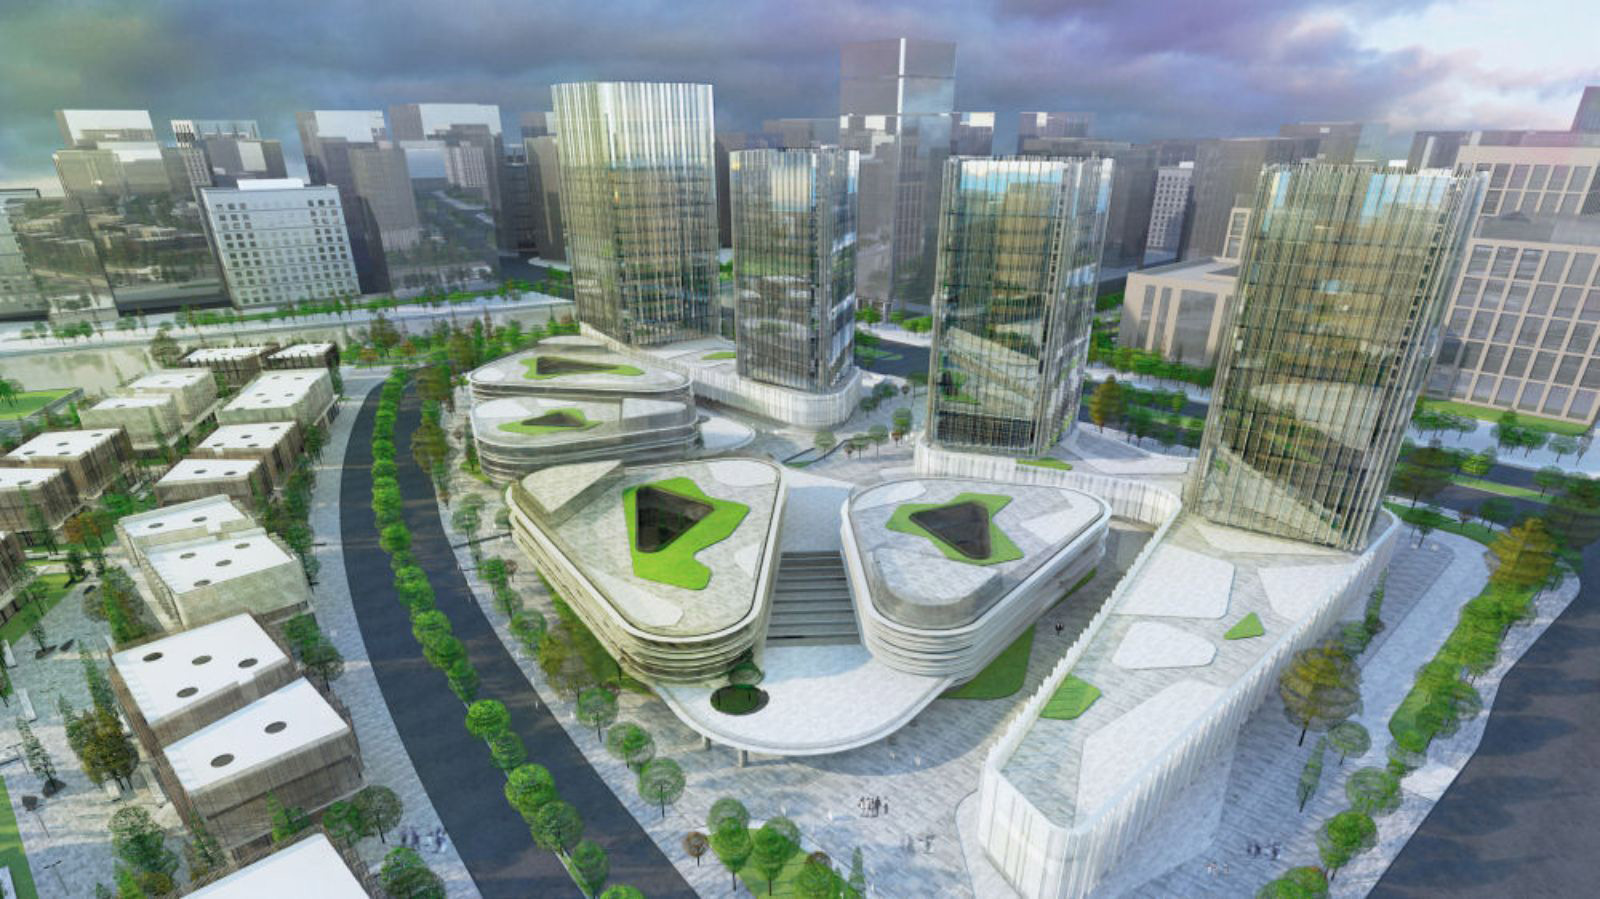 Smart City plans